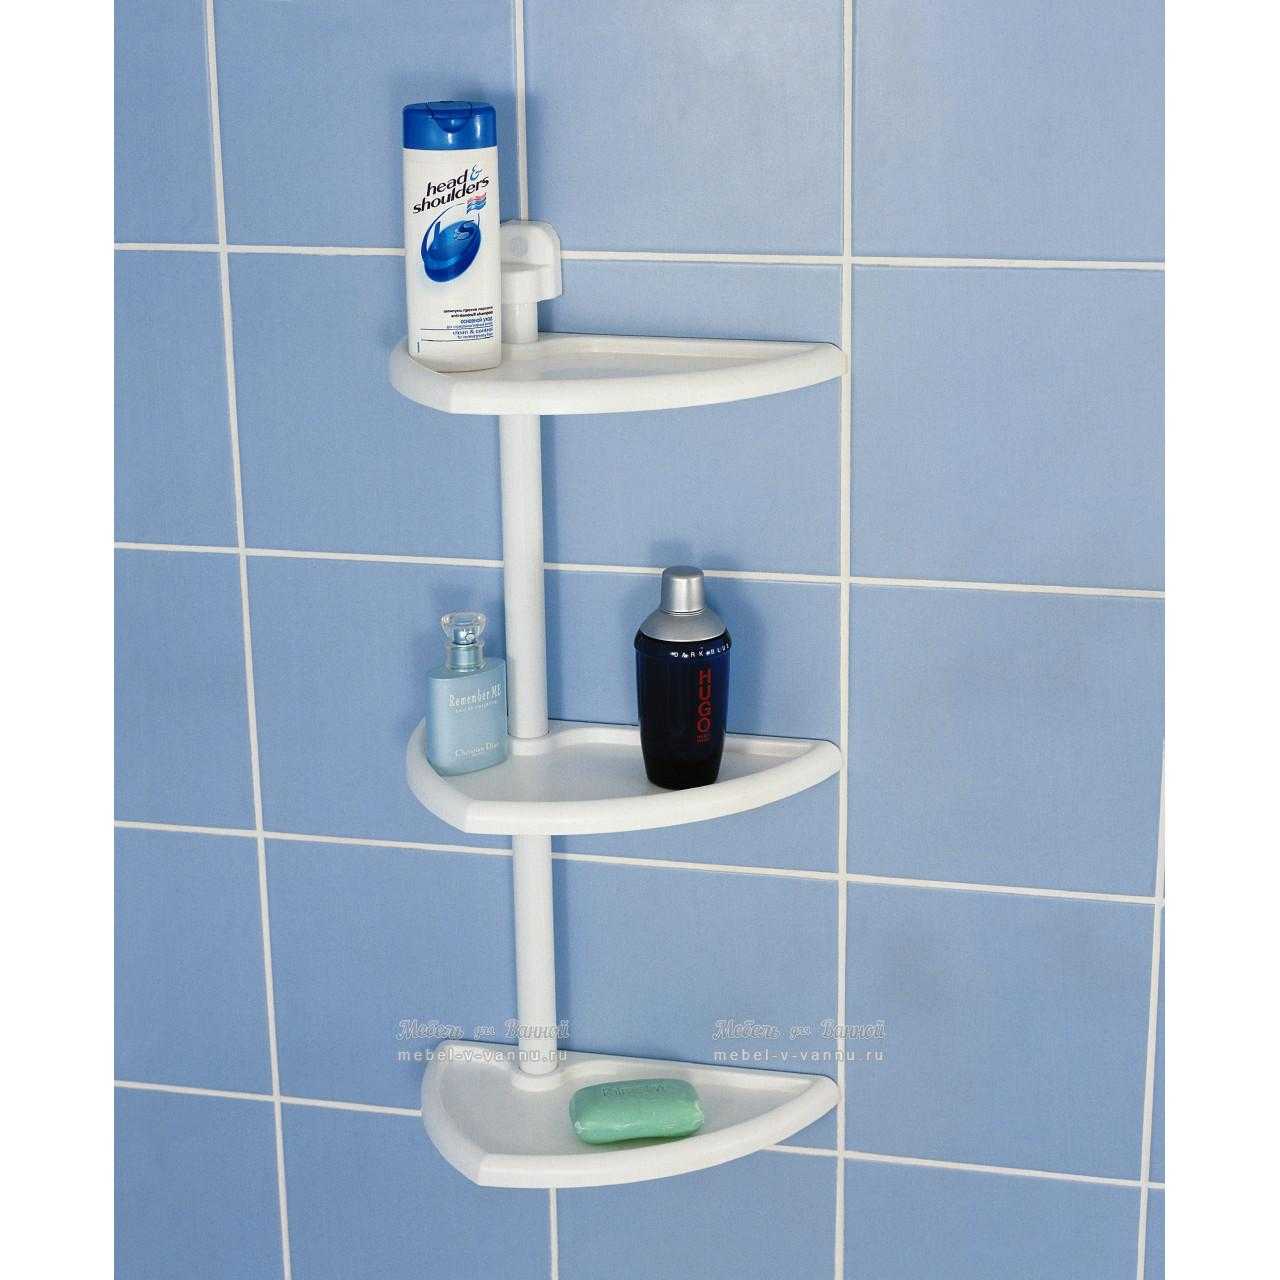 Полки для ванной комнаты: напольные и подвесные, с зеркалом, пластиковые, стеклянные, металлические, деревянные, из искусственного камня - всё в этой статье